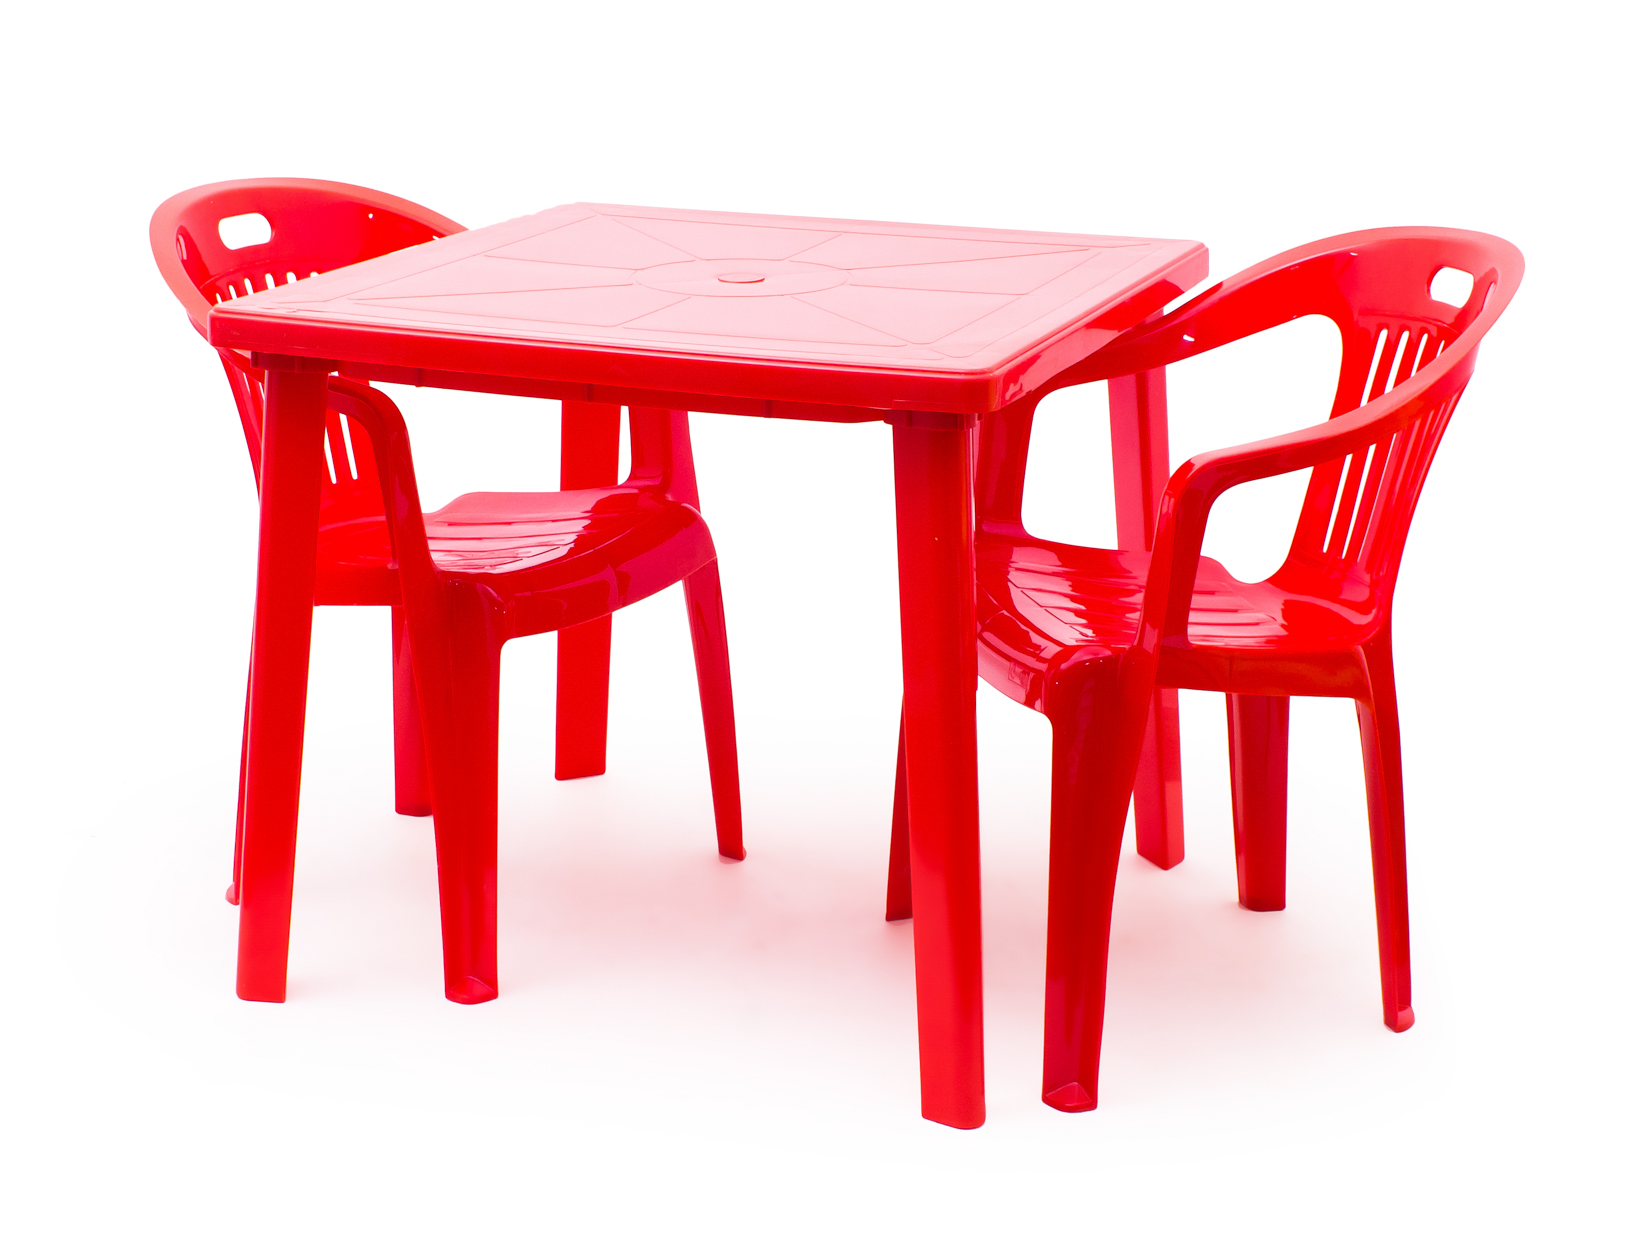 стол красный пластиковый круглый